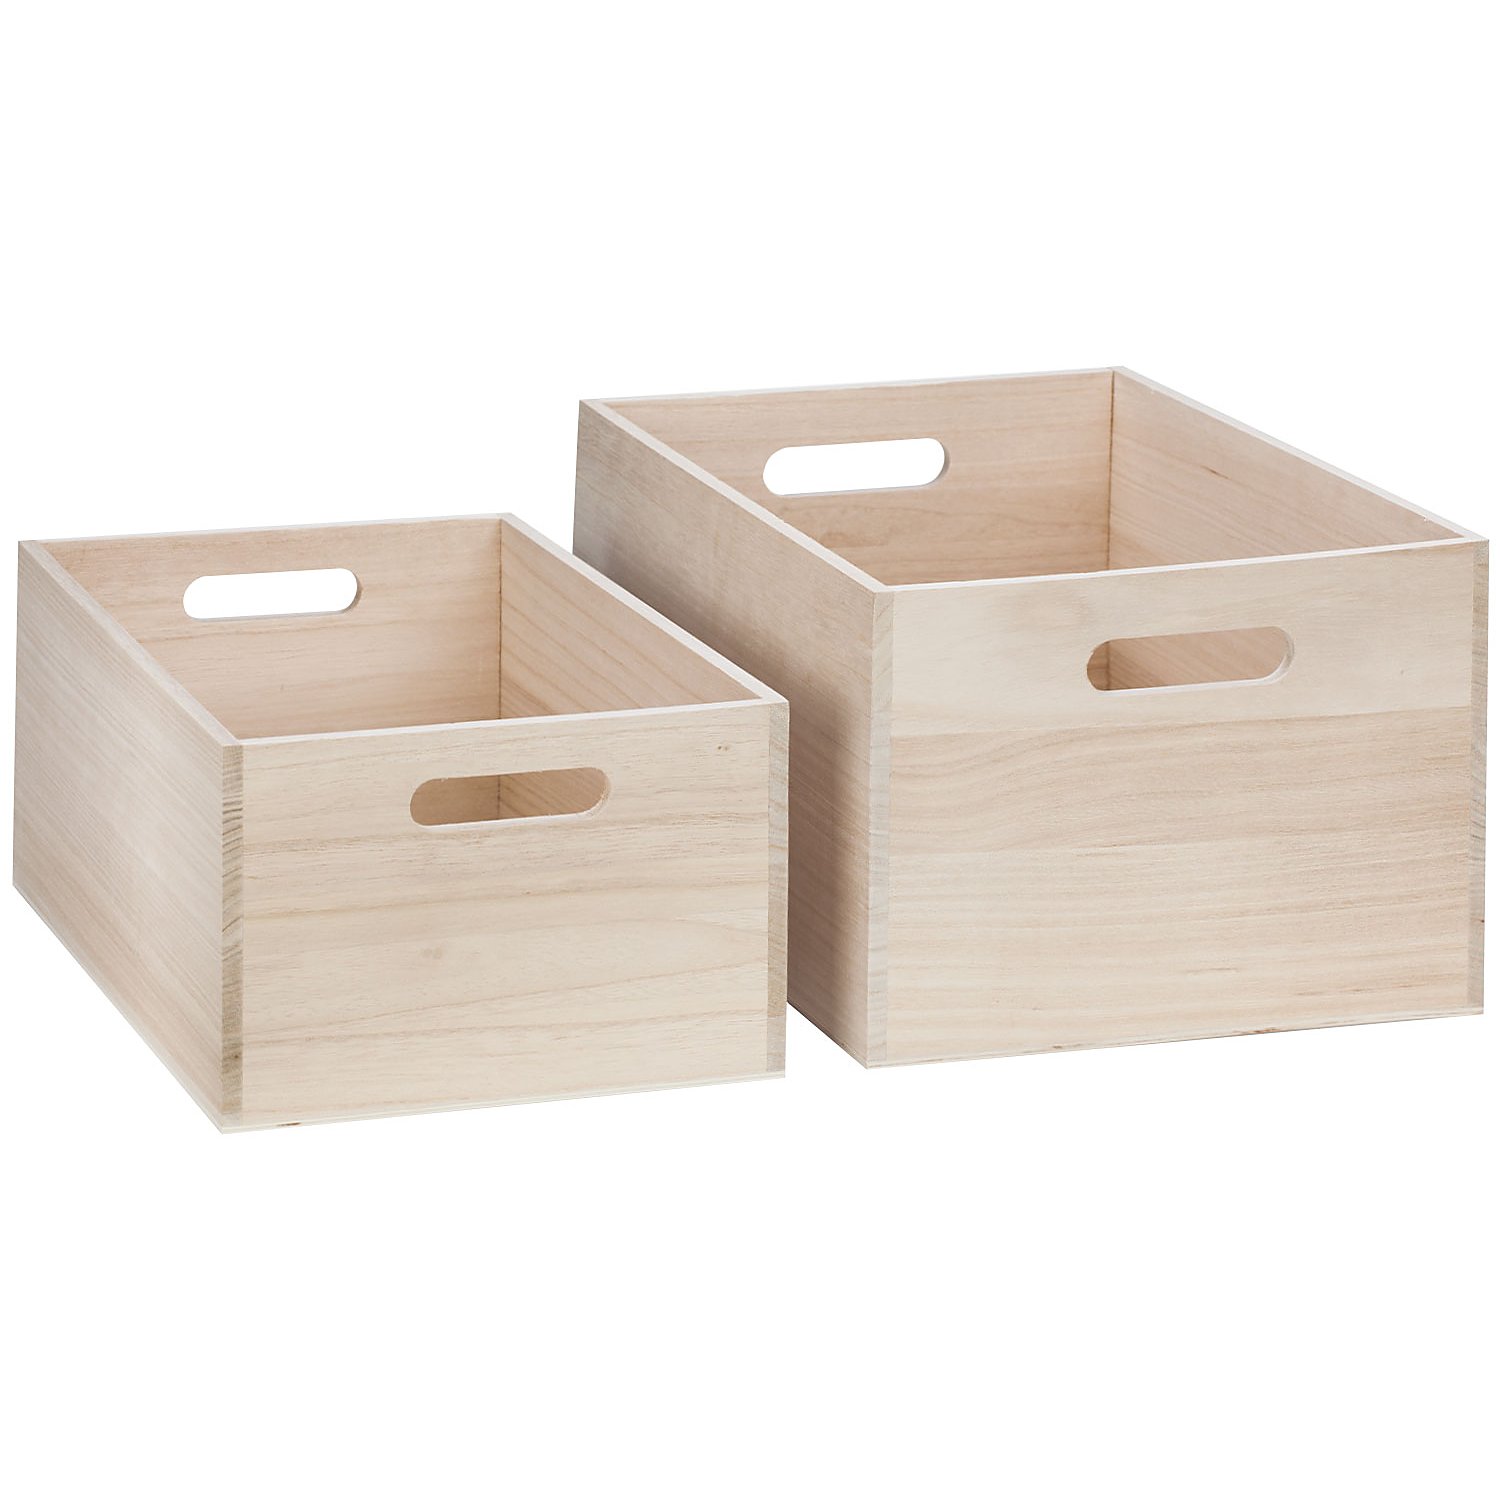 Holz-Kisten mit Tragegriffen, 36 x 26 x 19 cm und 32 x 22 x 15 cm